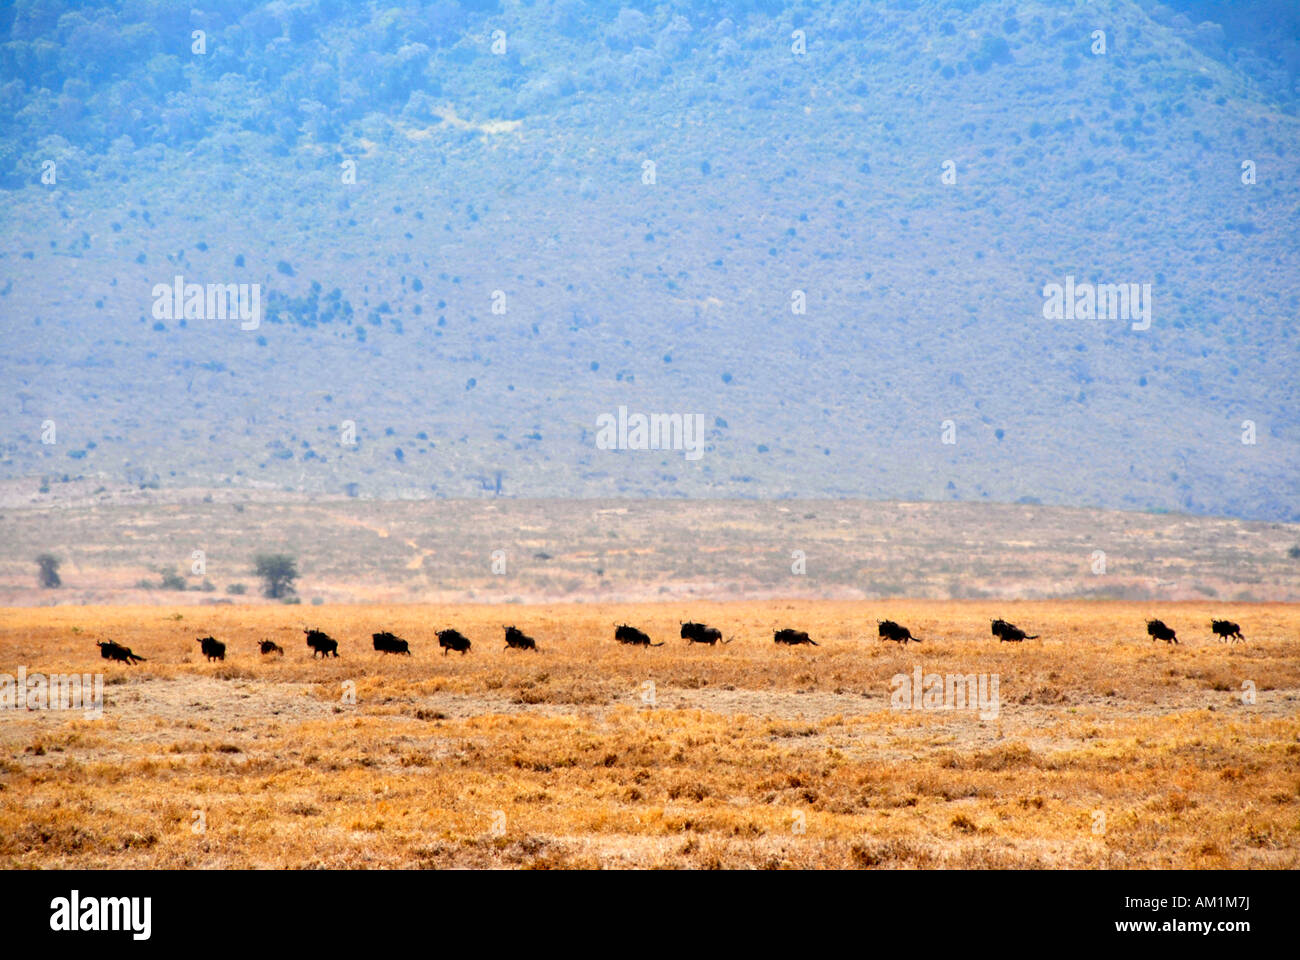 Troupeau de gnous bleu (Connochaetes taurinus) déplacer l'un après l'autre dans les prairies sèches le cratère du Ngorongoro en Tanzanie Banque D'Images